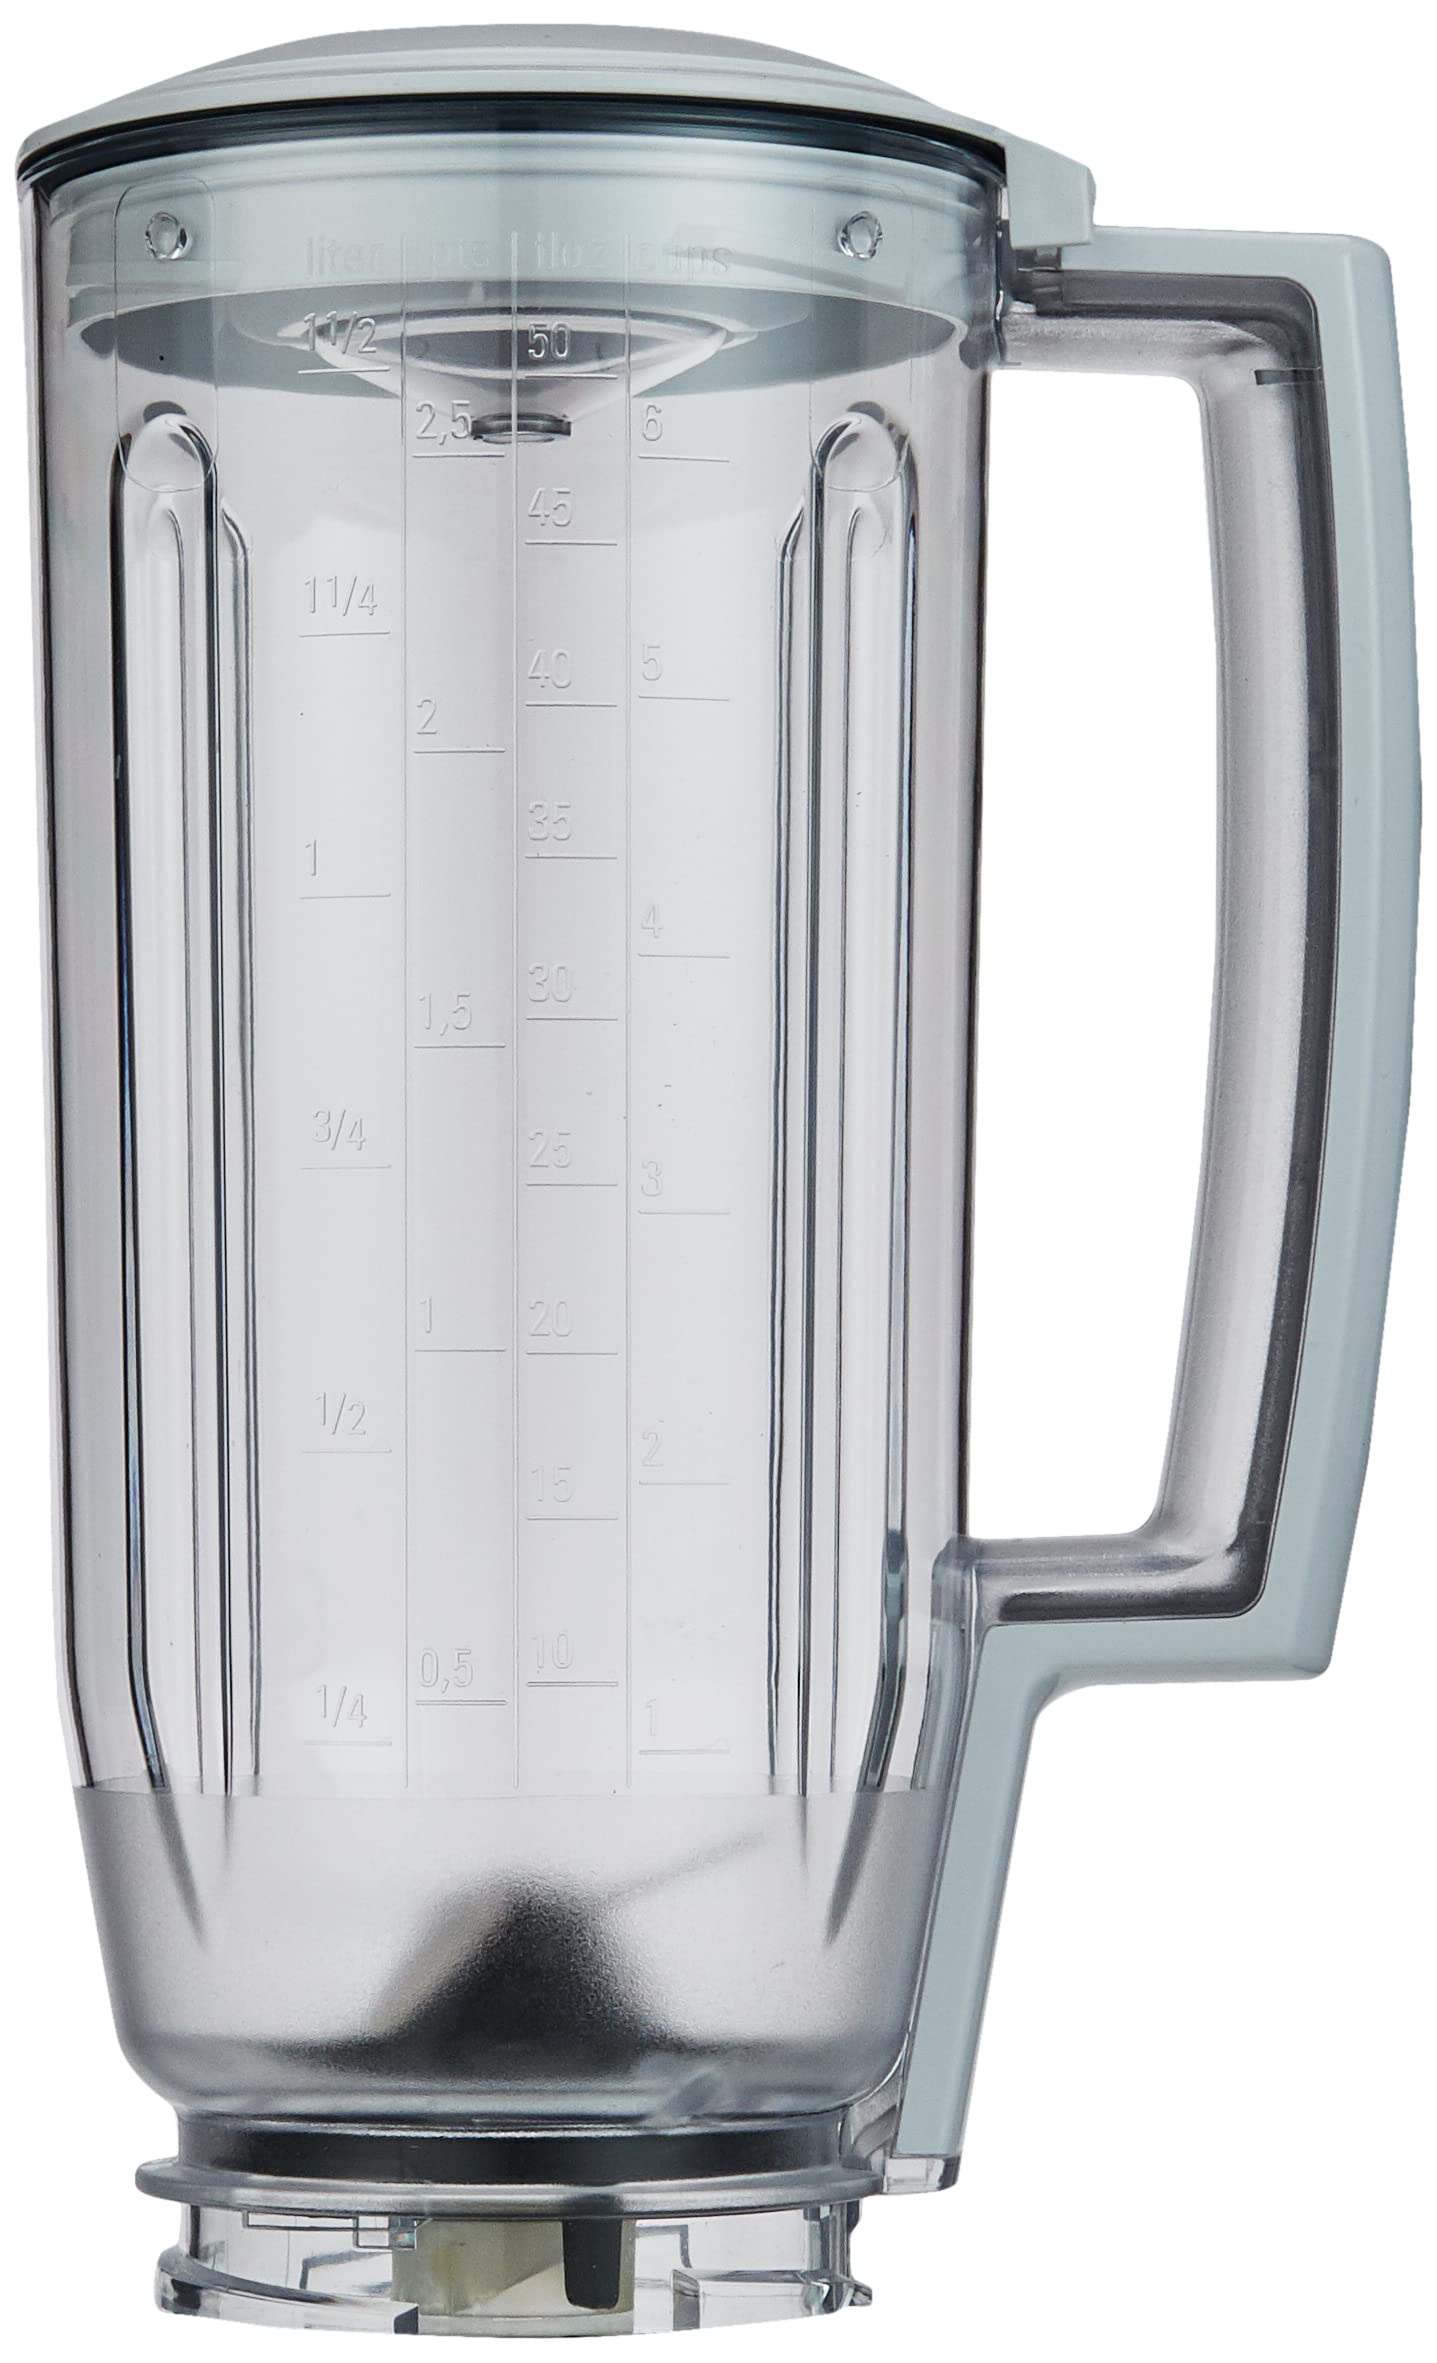 Bosch Mixer-Aufsatz MUZ6MX3, 2,0 Liter, Kunststoff, Tritan, für Shakes oder Smoothies bruchsicher, geschmacksneutral, spülmaschinengeeignet, passend für MUM6 Küchenmaschine